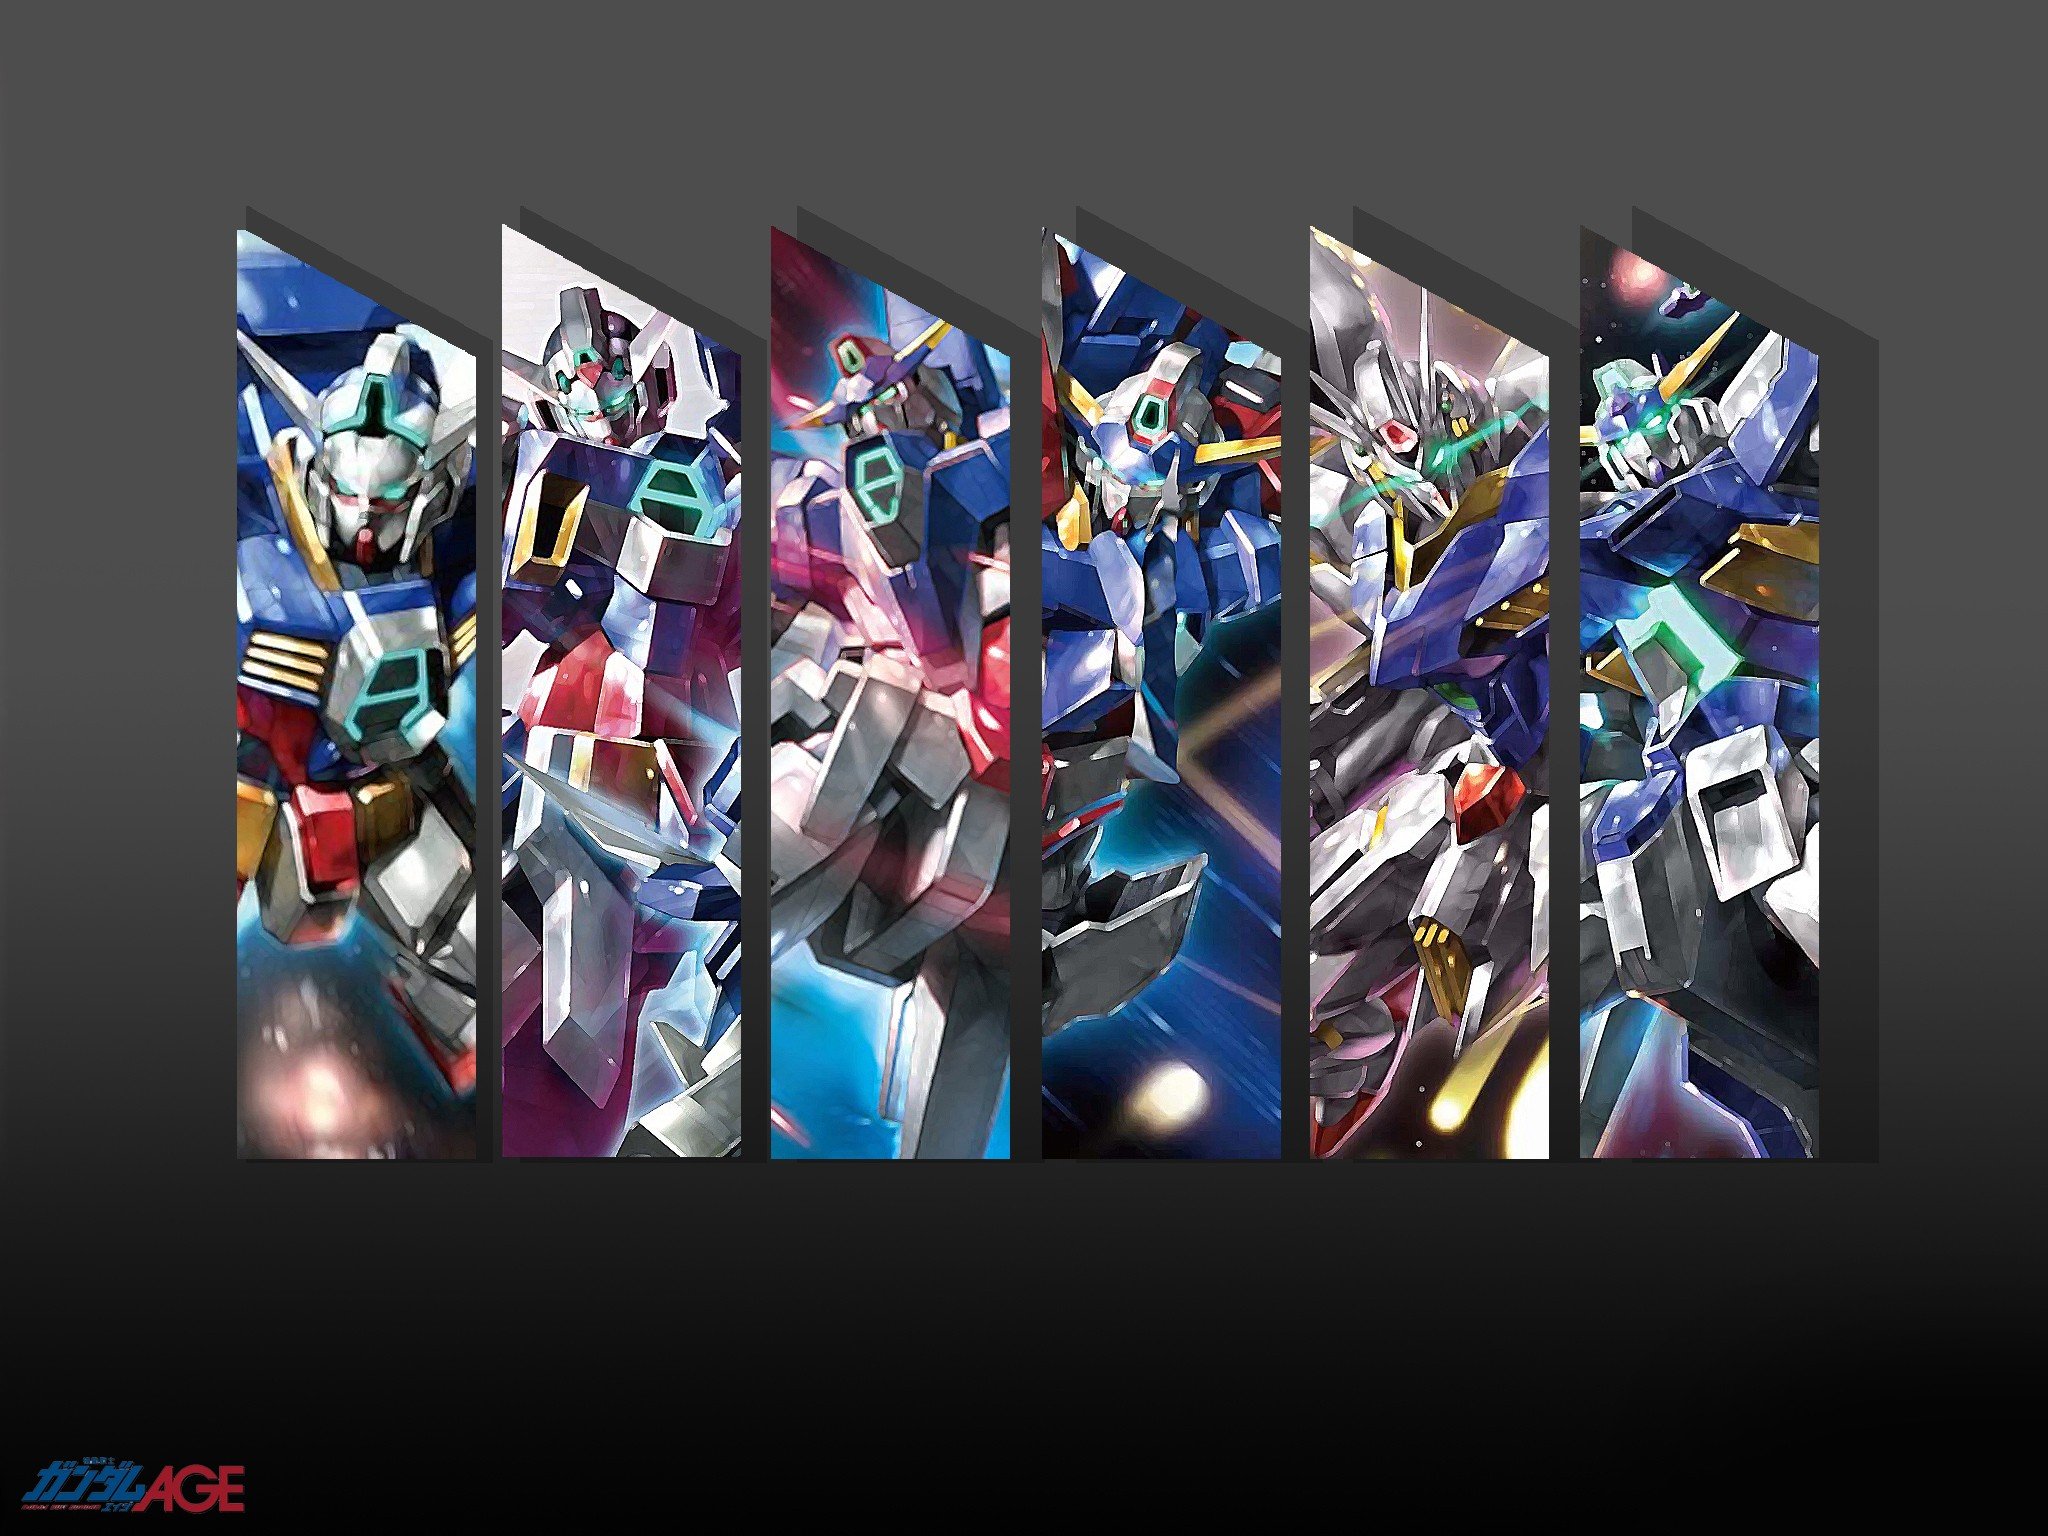 gundam, Mecha, Gundam, Age Wallpaper